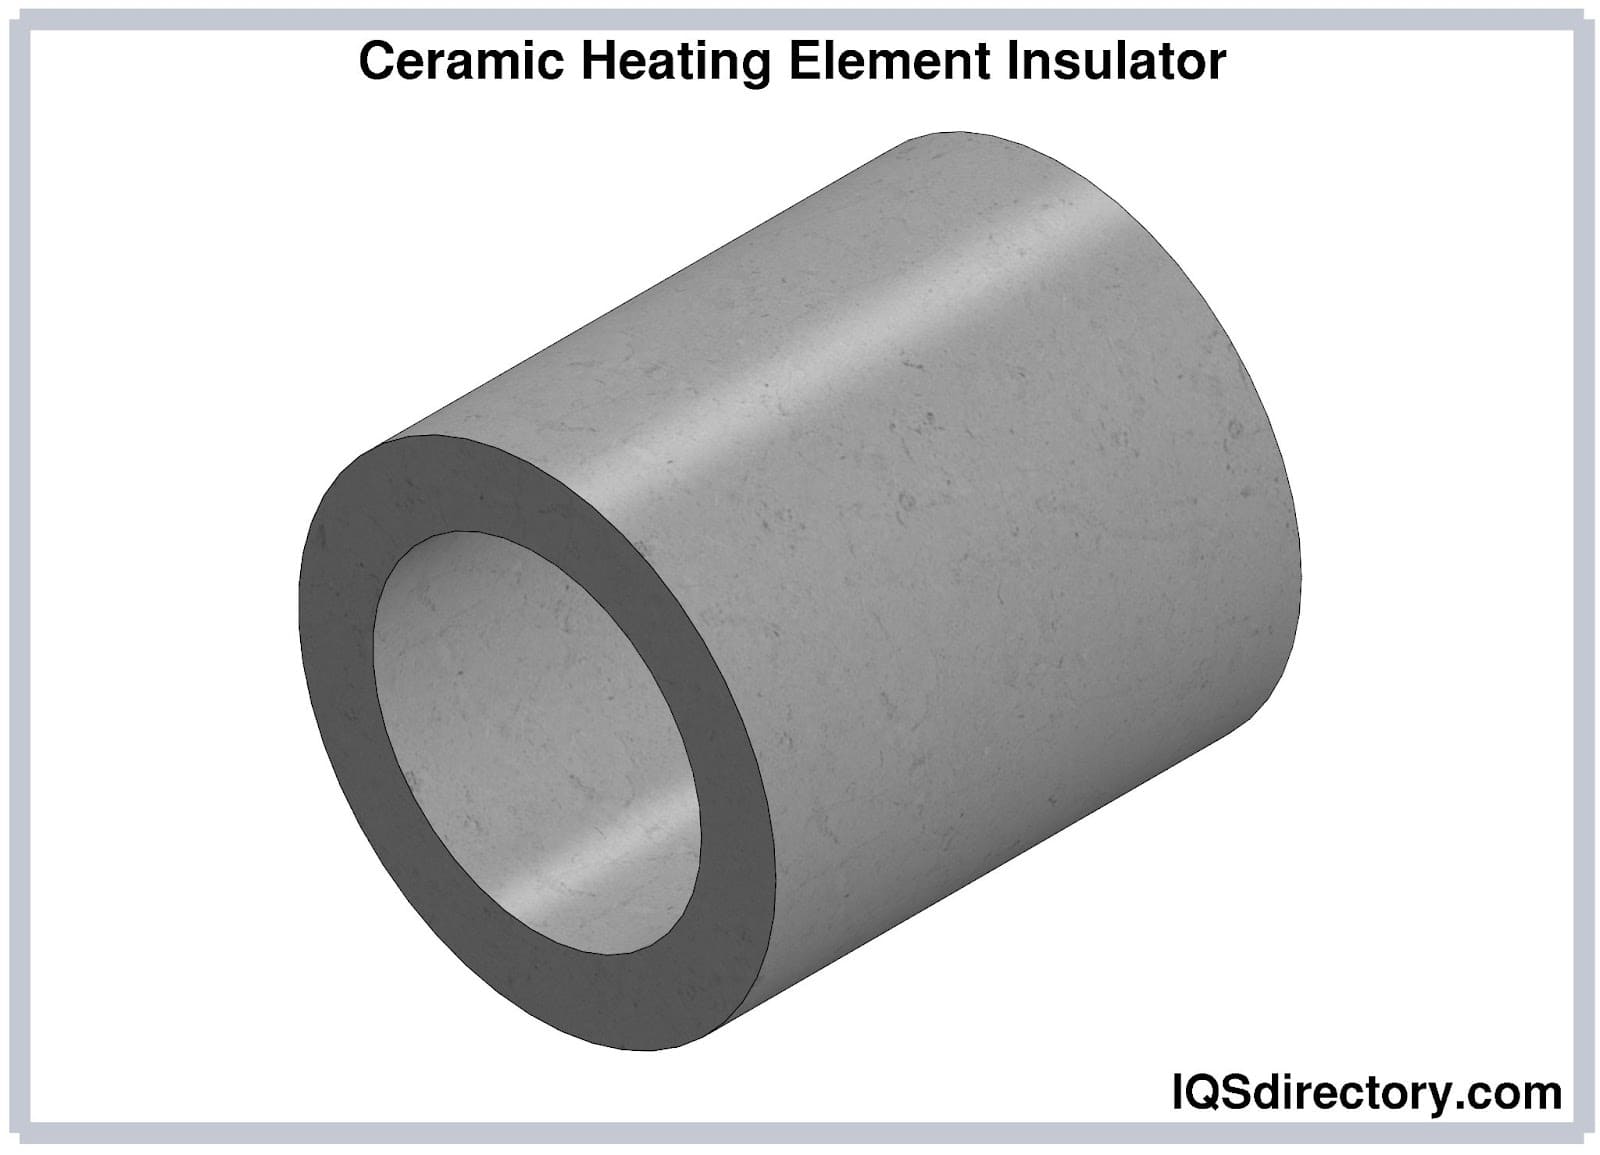 Ceramic Heating Element Insulator